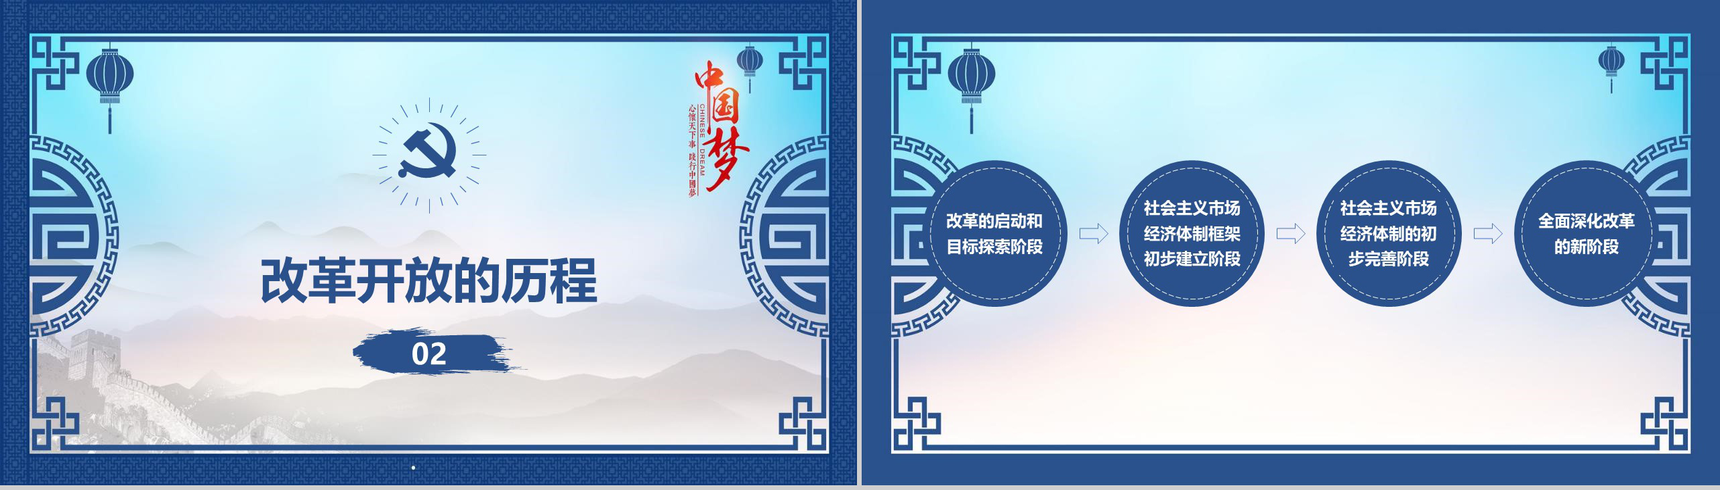 山水画中国梦改革开放40周年改革PPT模板-6